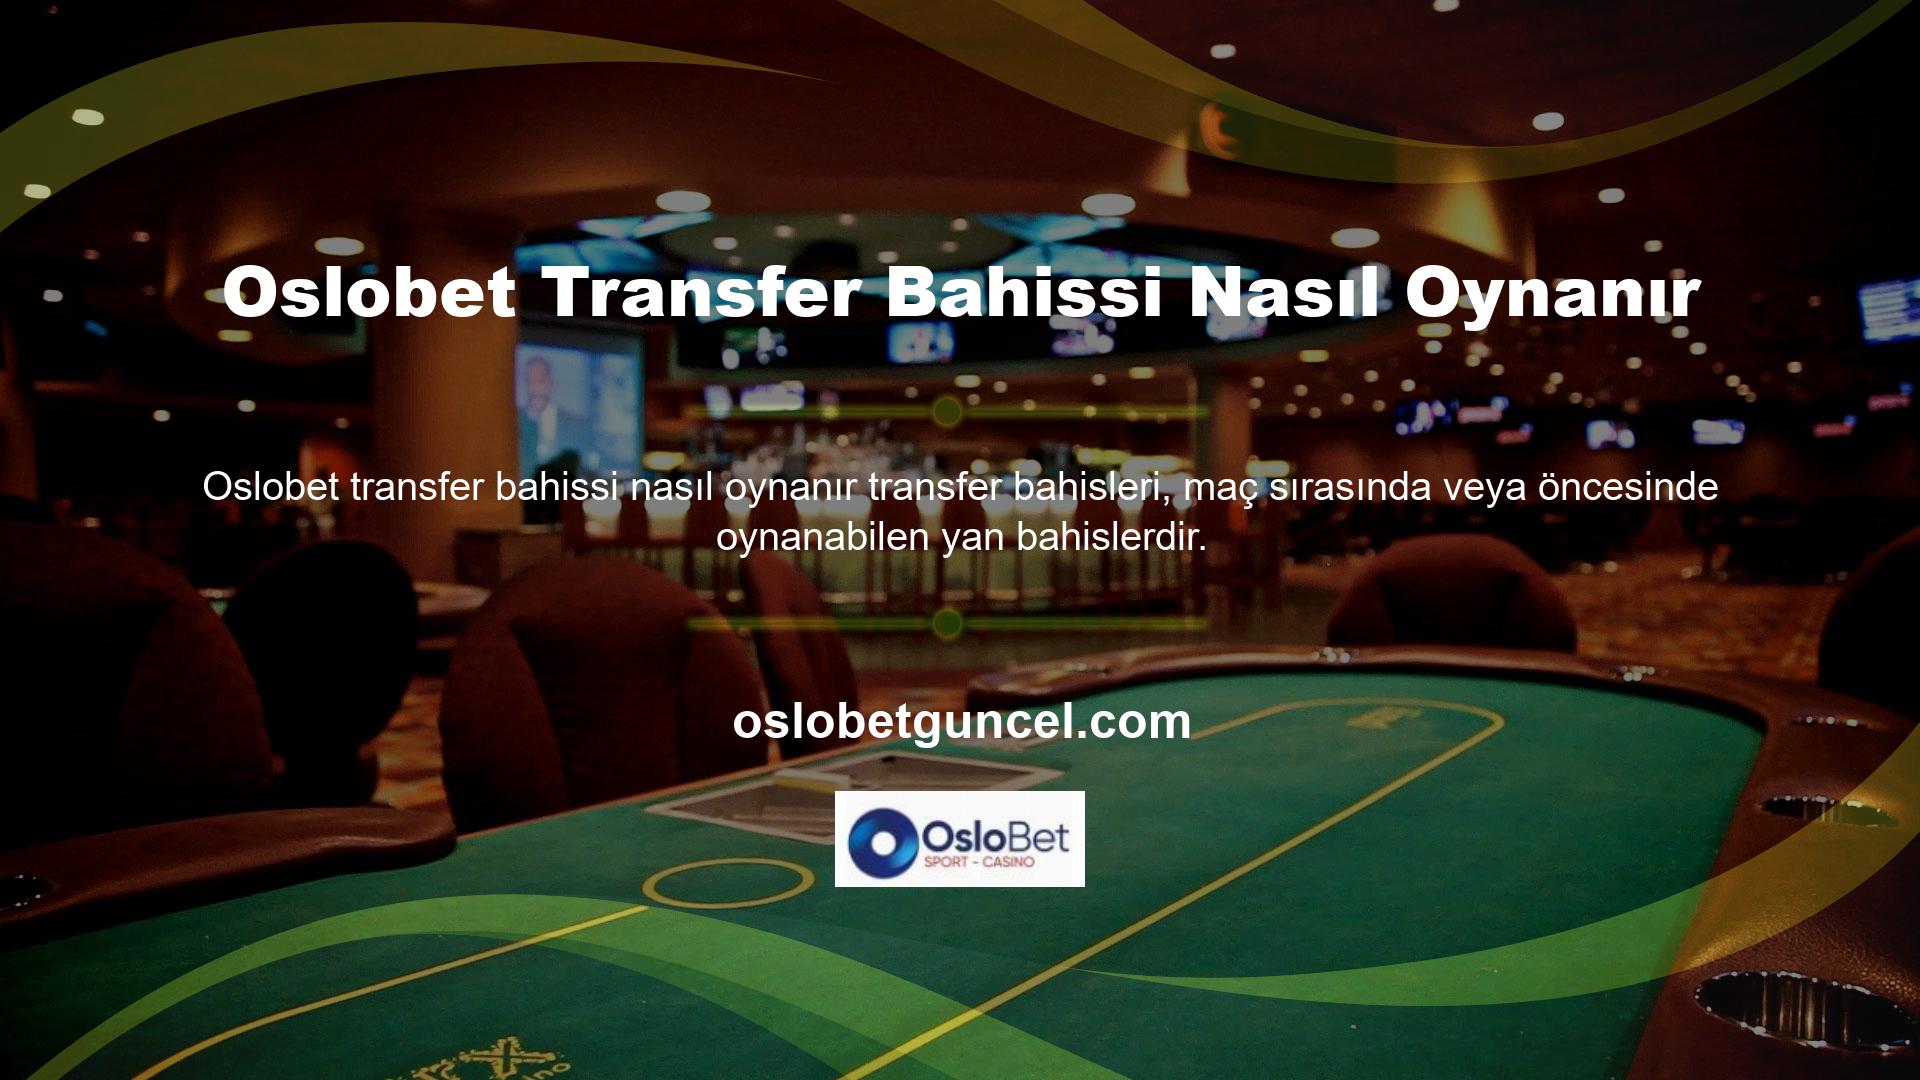 Oslobet web sitesi bahis ekranında transfer bahislerinin nasıl oynanacağını açıklamaktadır